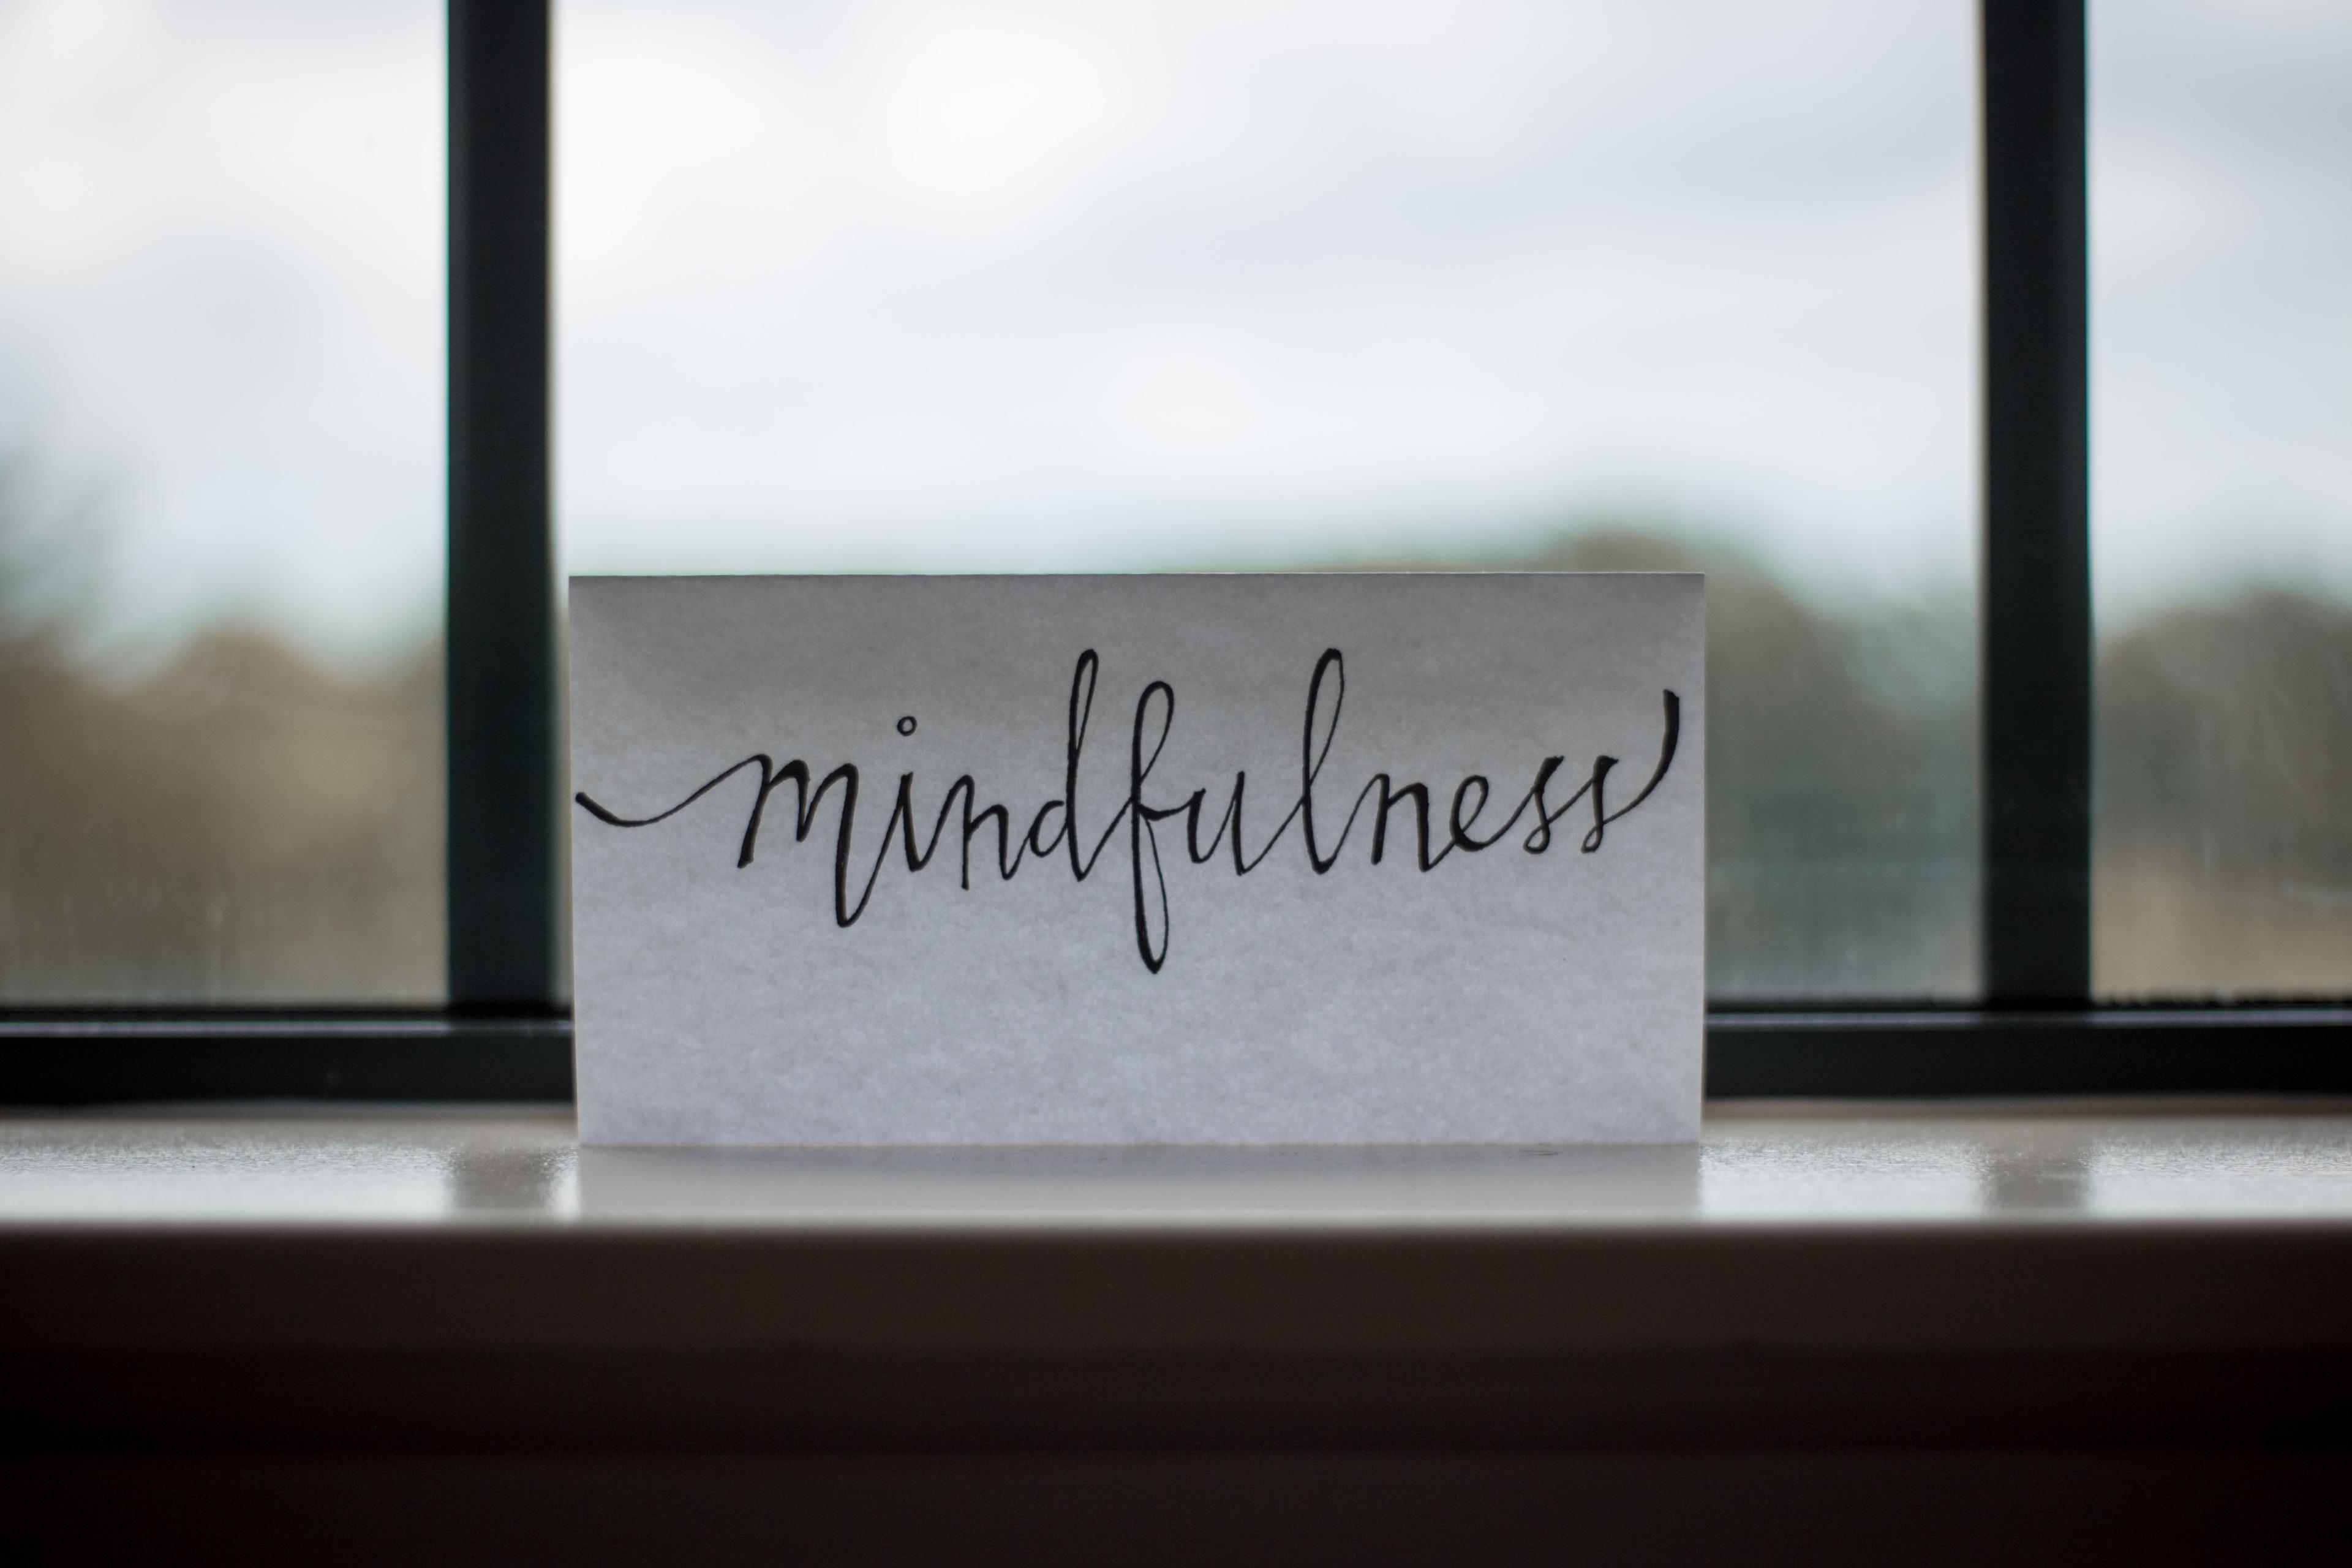 Mindfulness - trening uważności.Jak praktyka mindfulness wpływa na zdrowie? Mindfulness - na czym polega trening uważności? Czym jest mindfulness, czyli uważność? Trening mindfulness